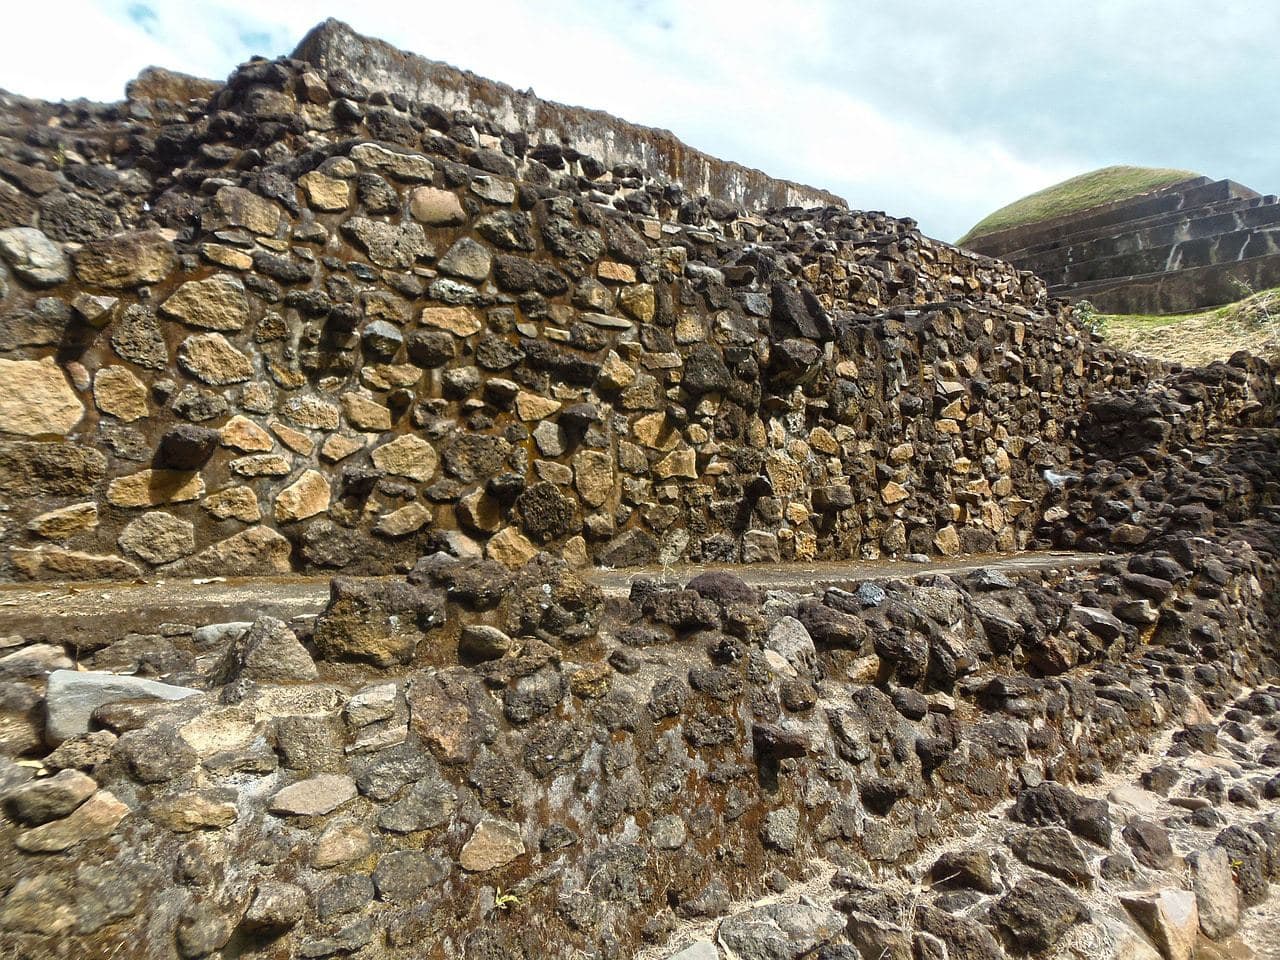 "The Mayan ruins of Tazumal"